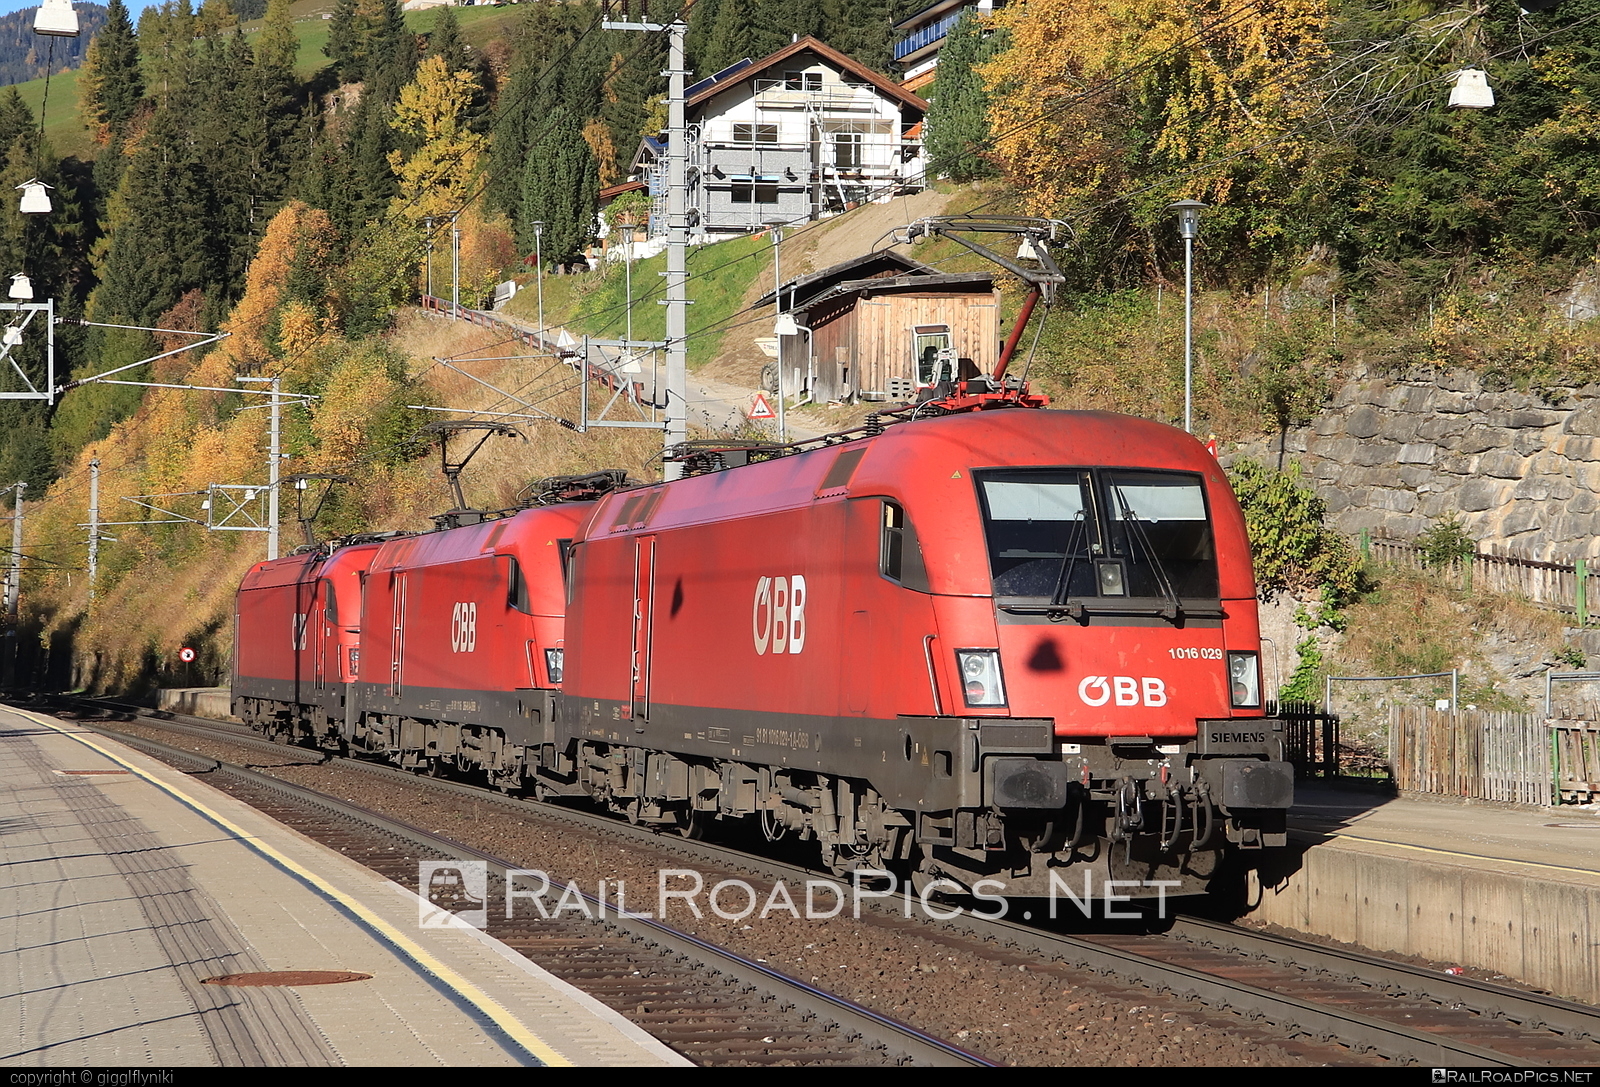 Siemens ES 64 U2 - 1016 029 operated by Rail Cargo Austria AG #es64 #es64u2 #eurosprinter #obb #osterreichischebundesbahnen #rcw #siemens #siemensEs64 #siemensEs64u2 #siemenstaurus #taurus #tauruslocomotive